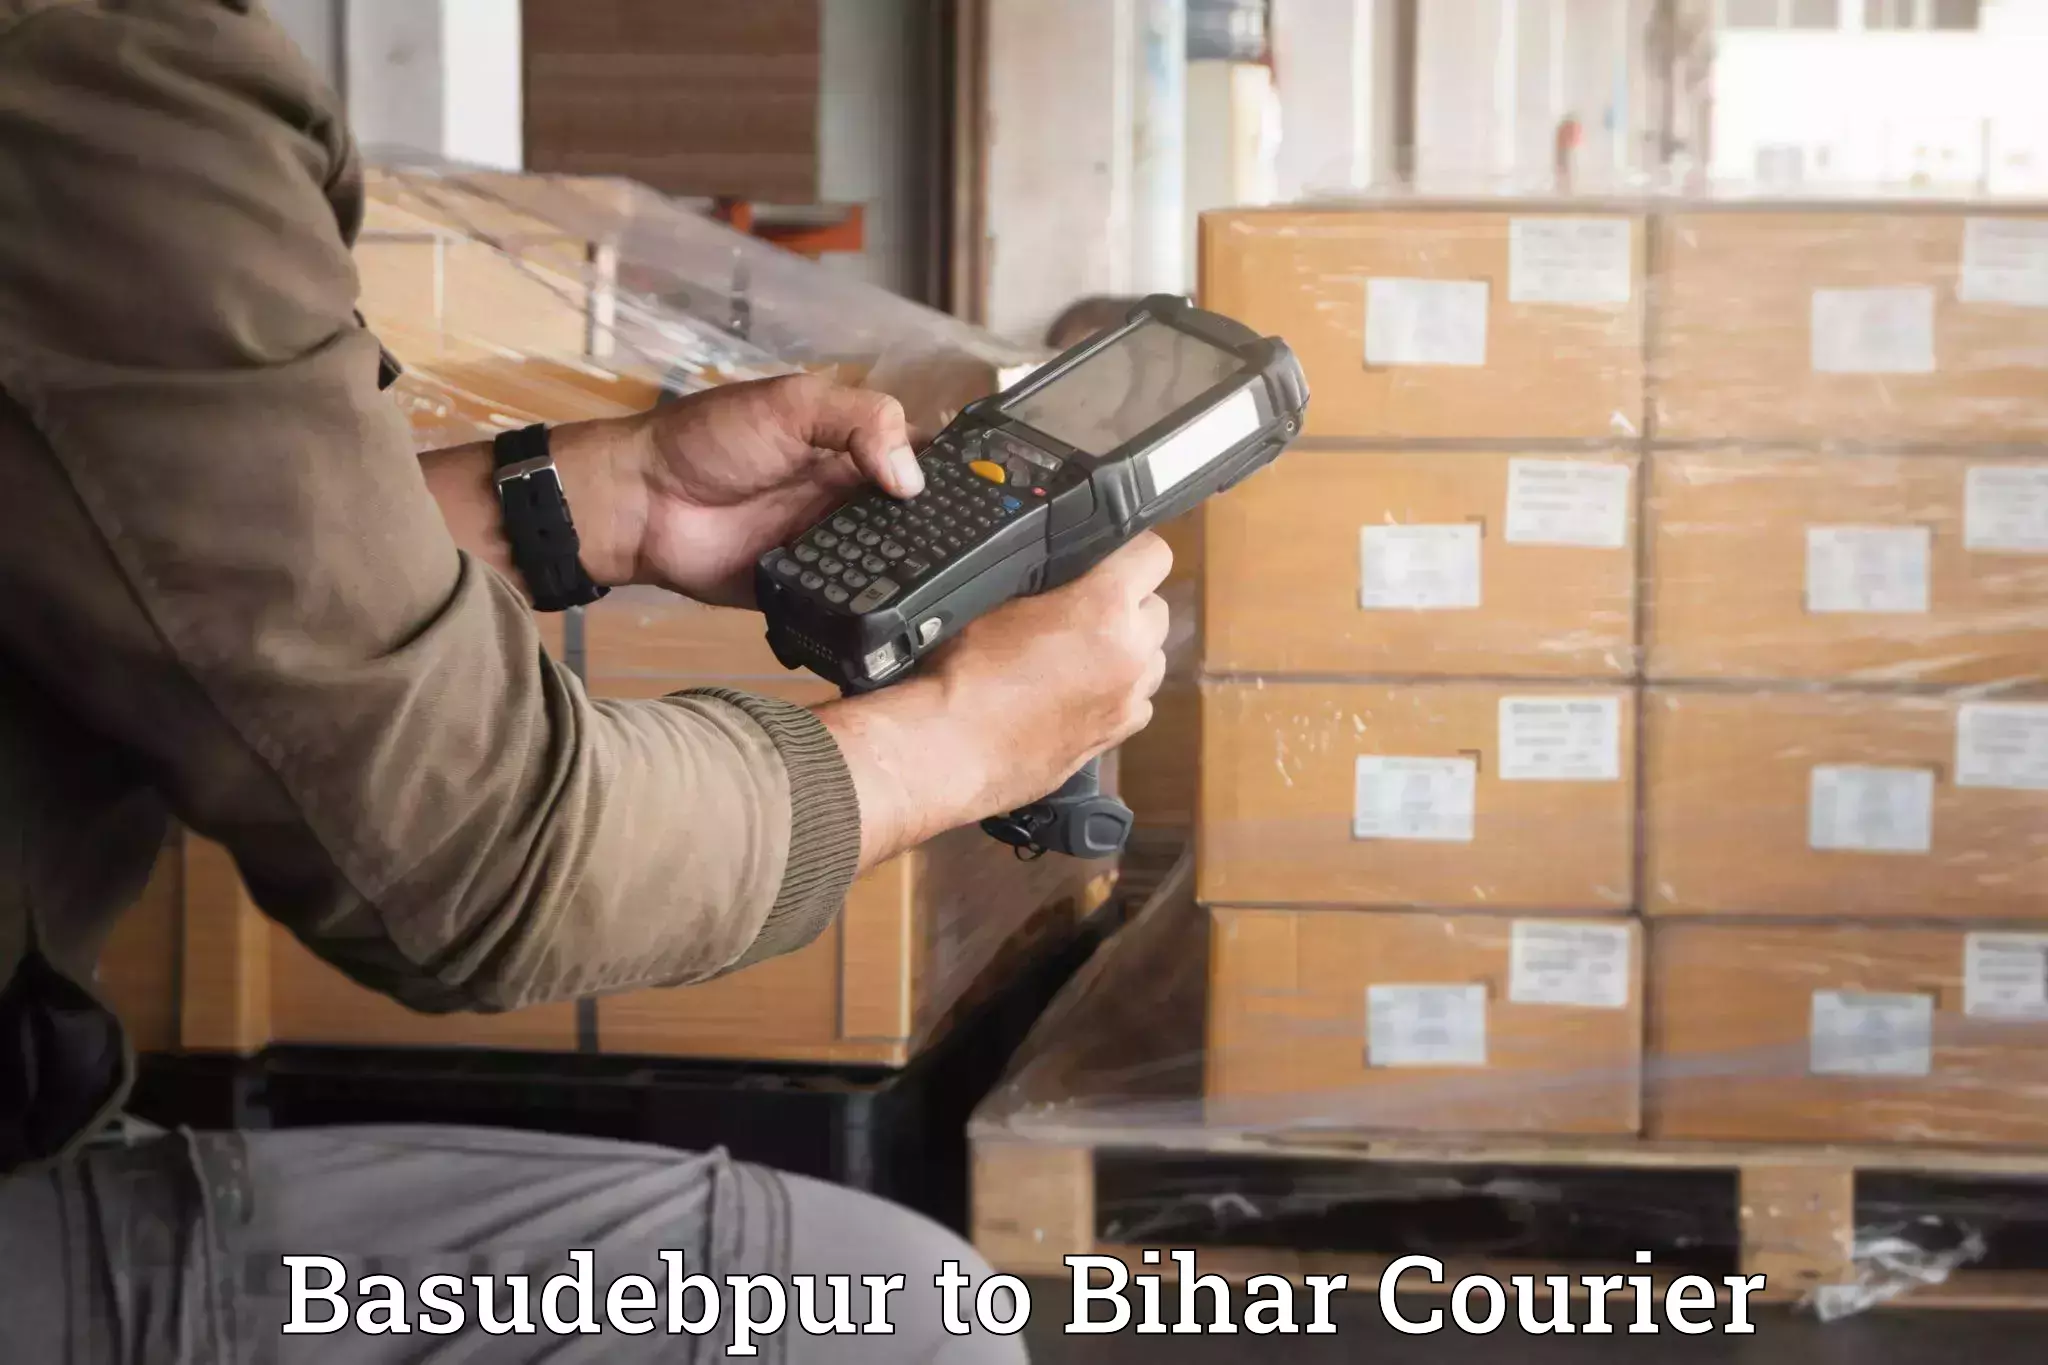 Furniture delivery service Basudebpur to Kishanganj